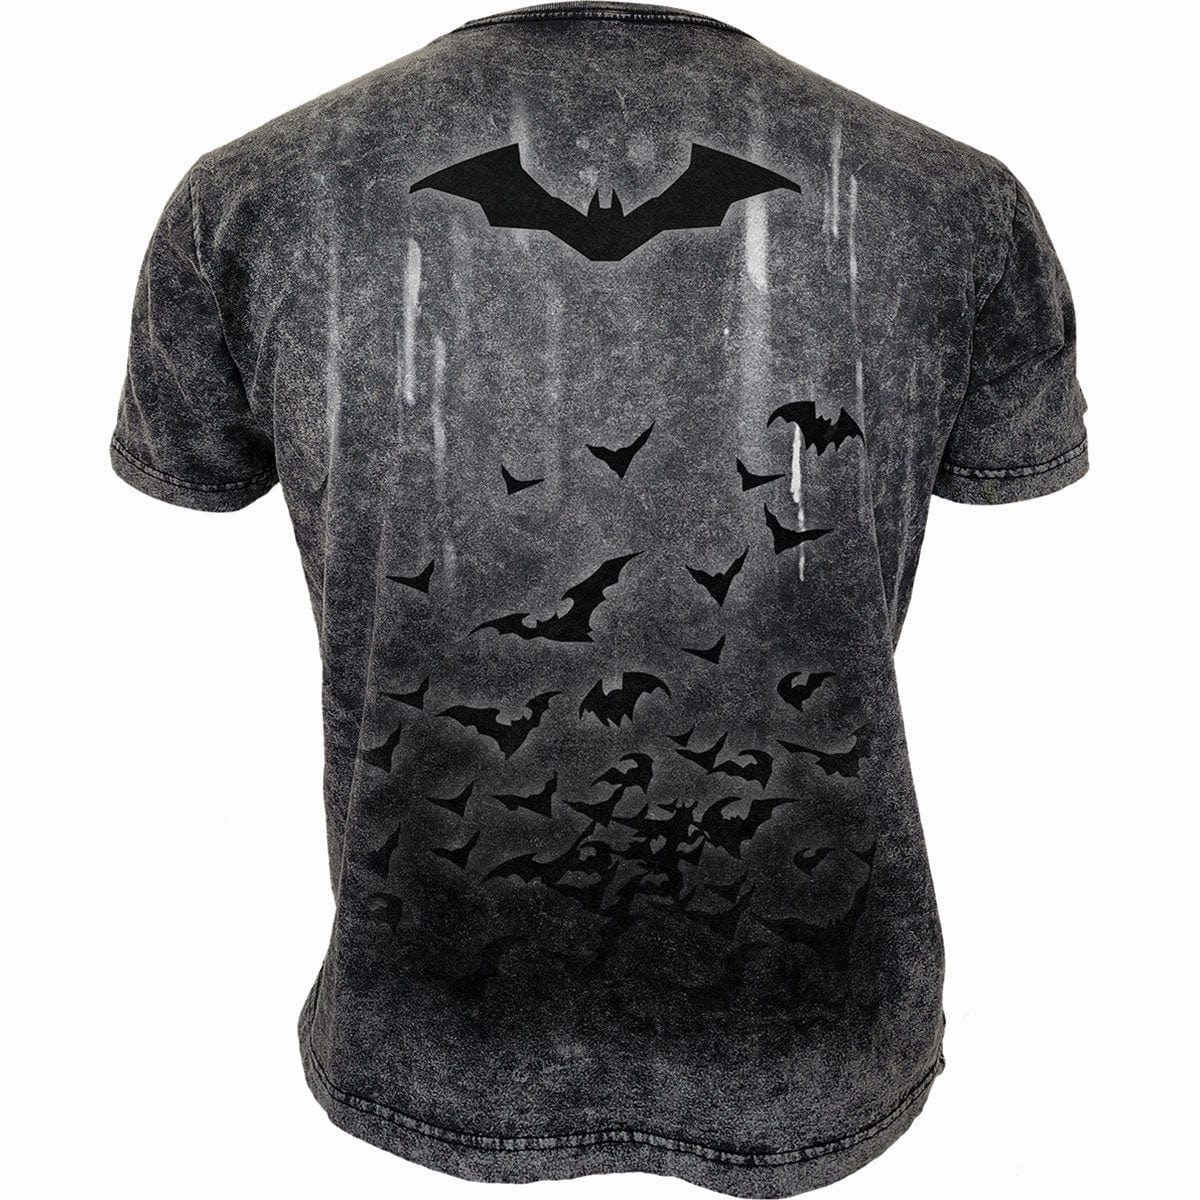 THE BATMAN - ACID RAIN - Acid Wash T-Shirt - Spiral USA